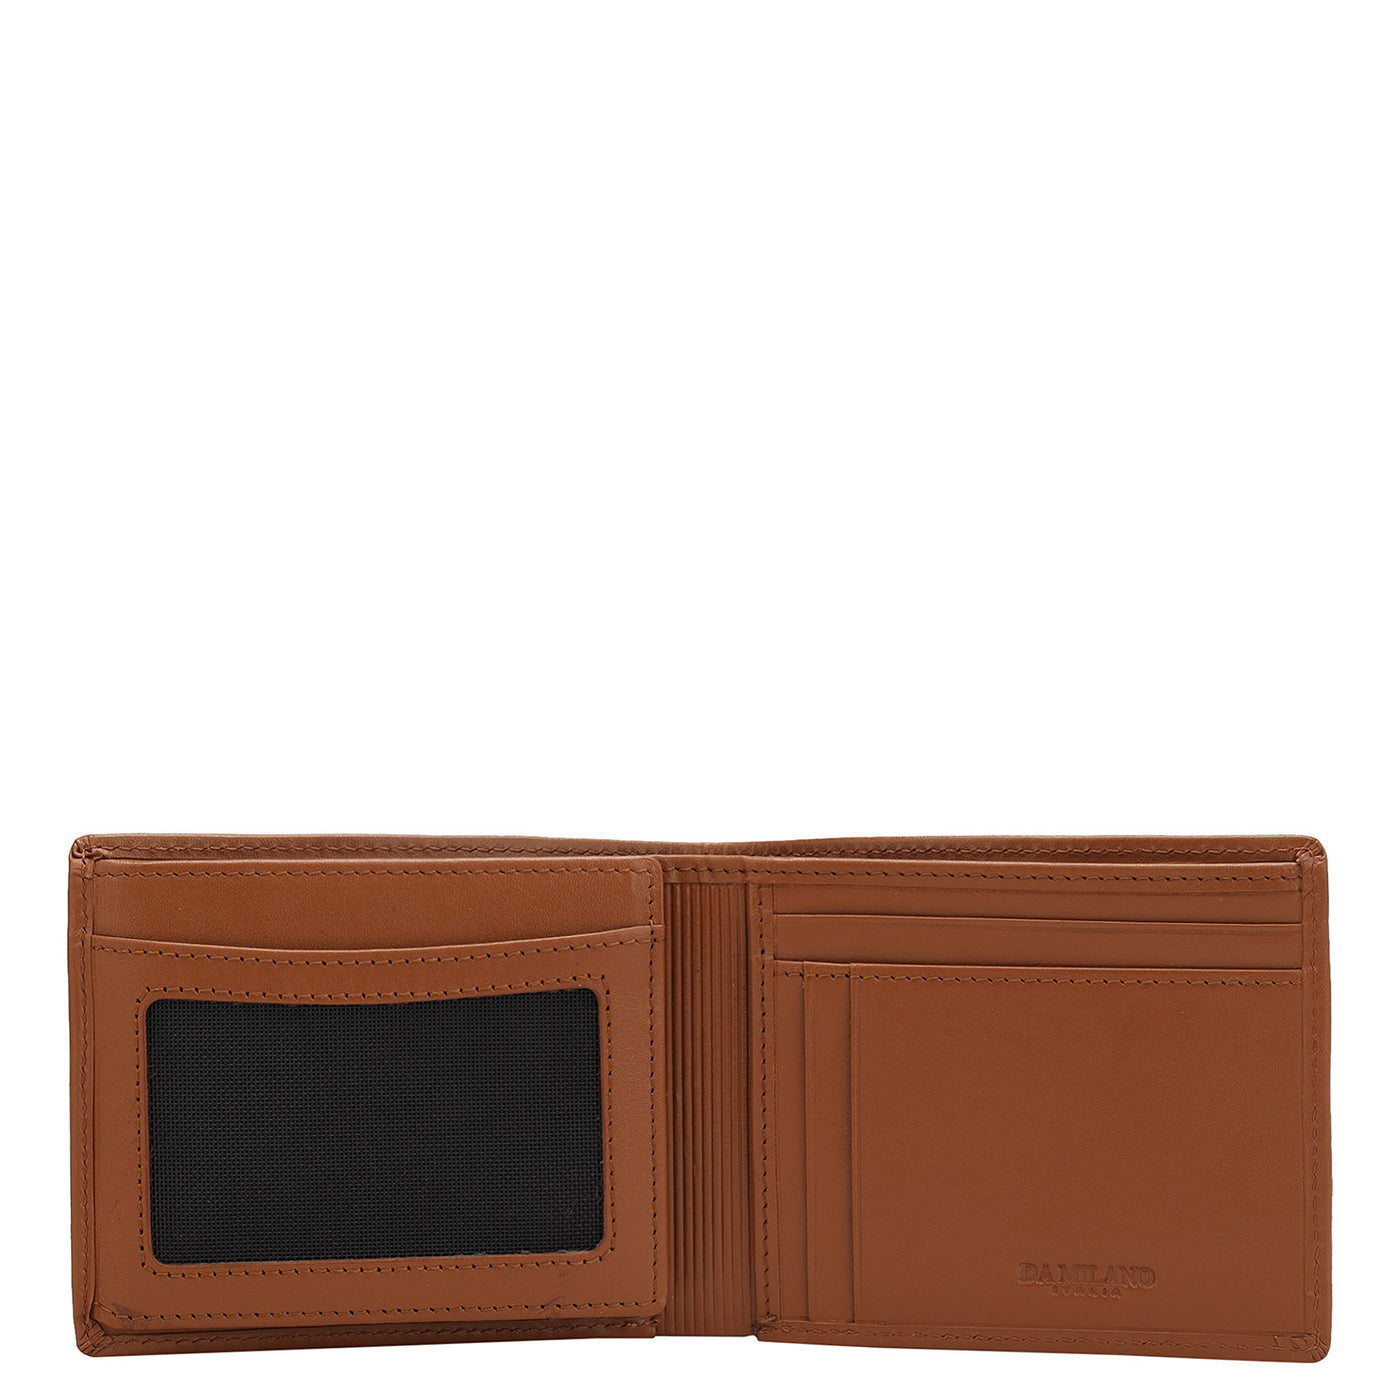 Plain Leather Mens Wallet - Tan